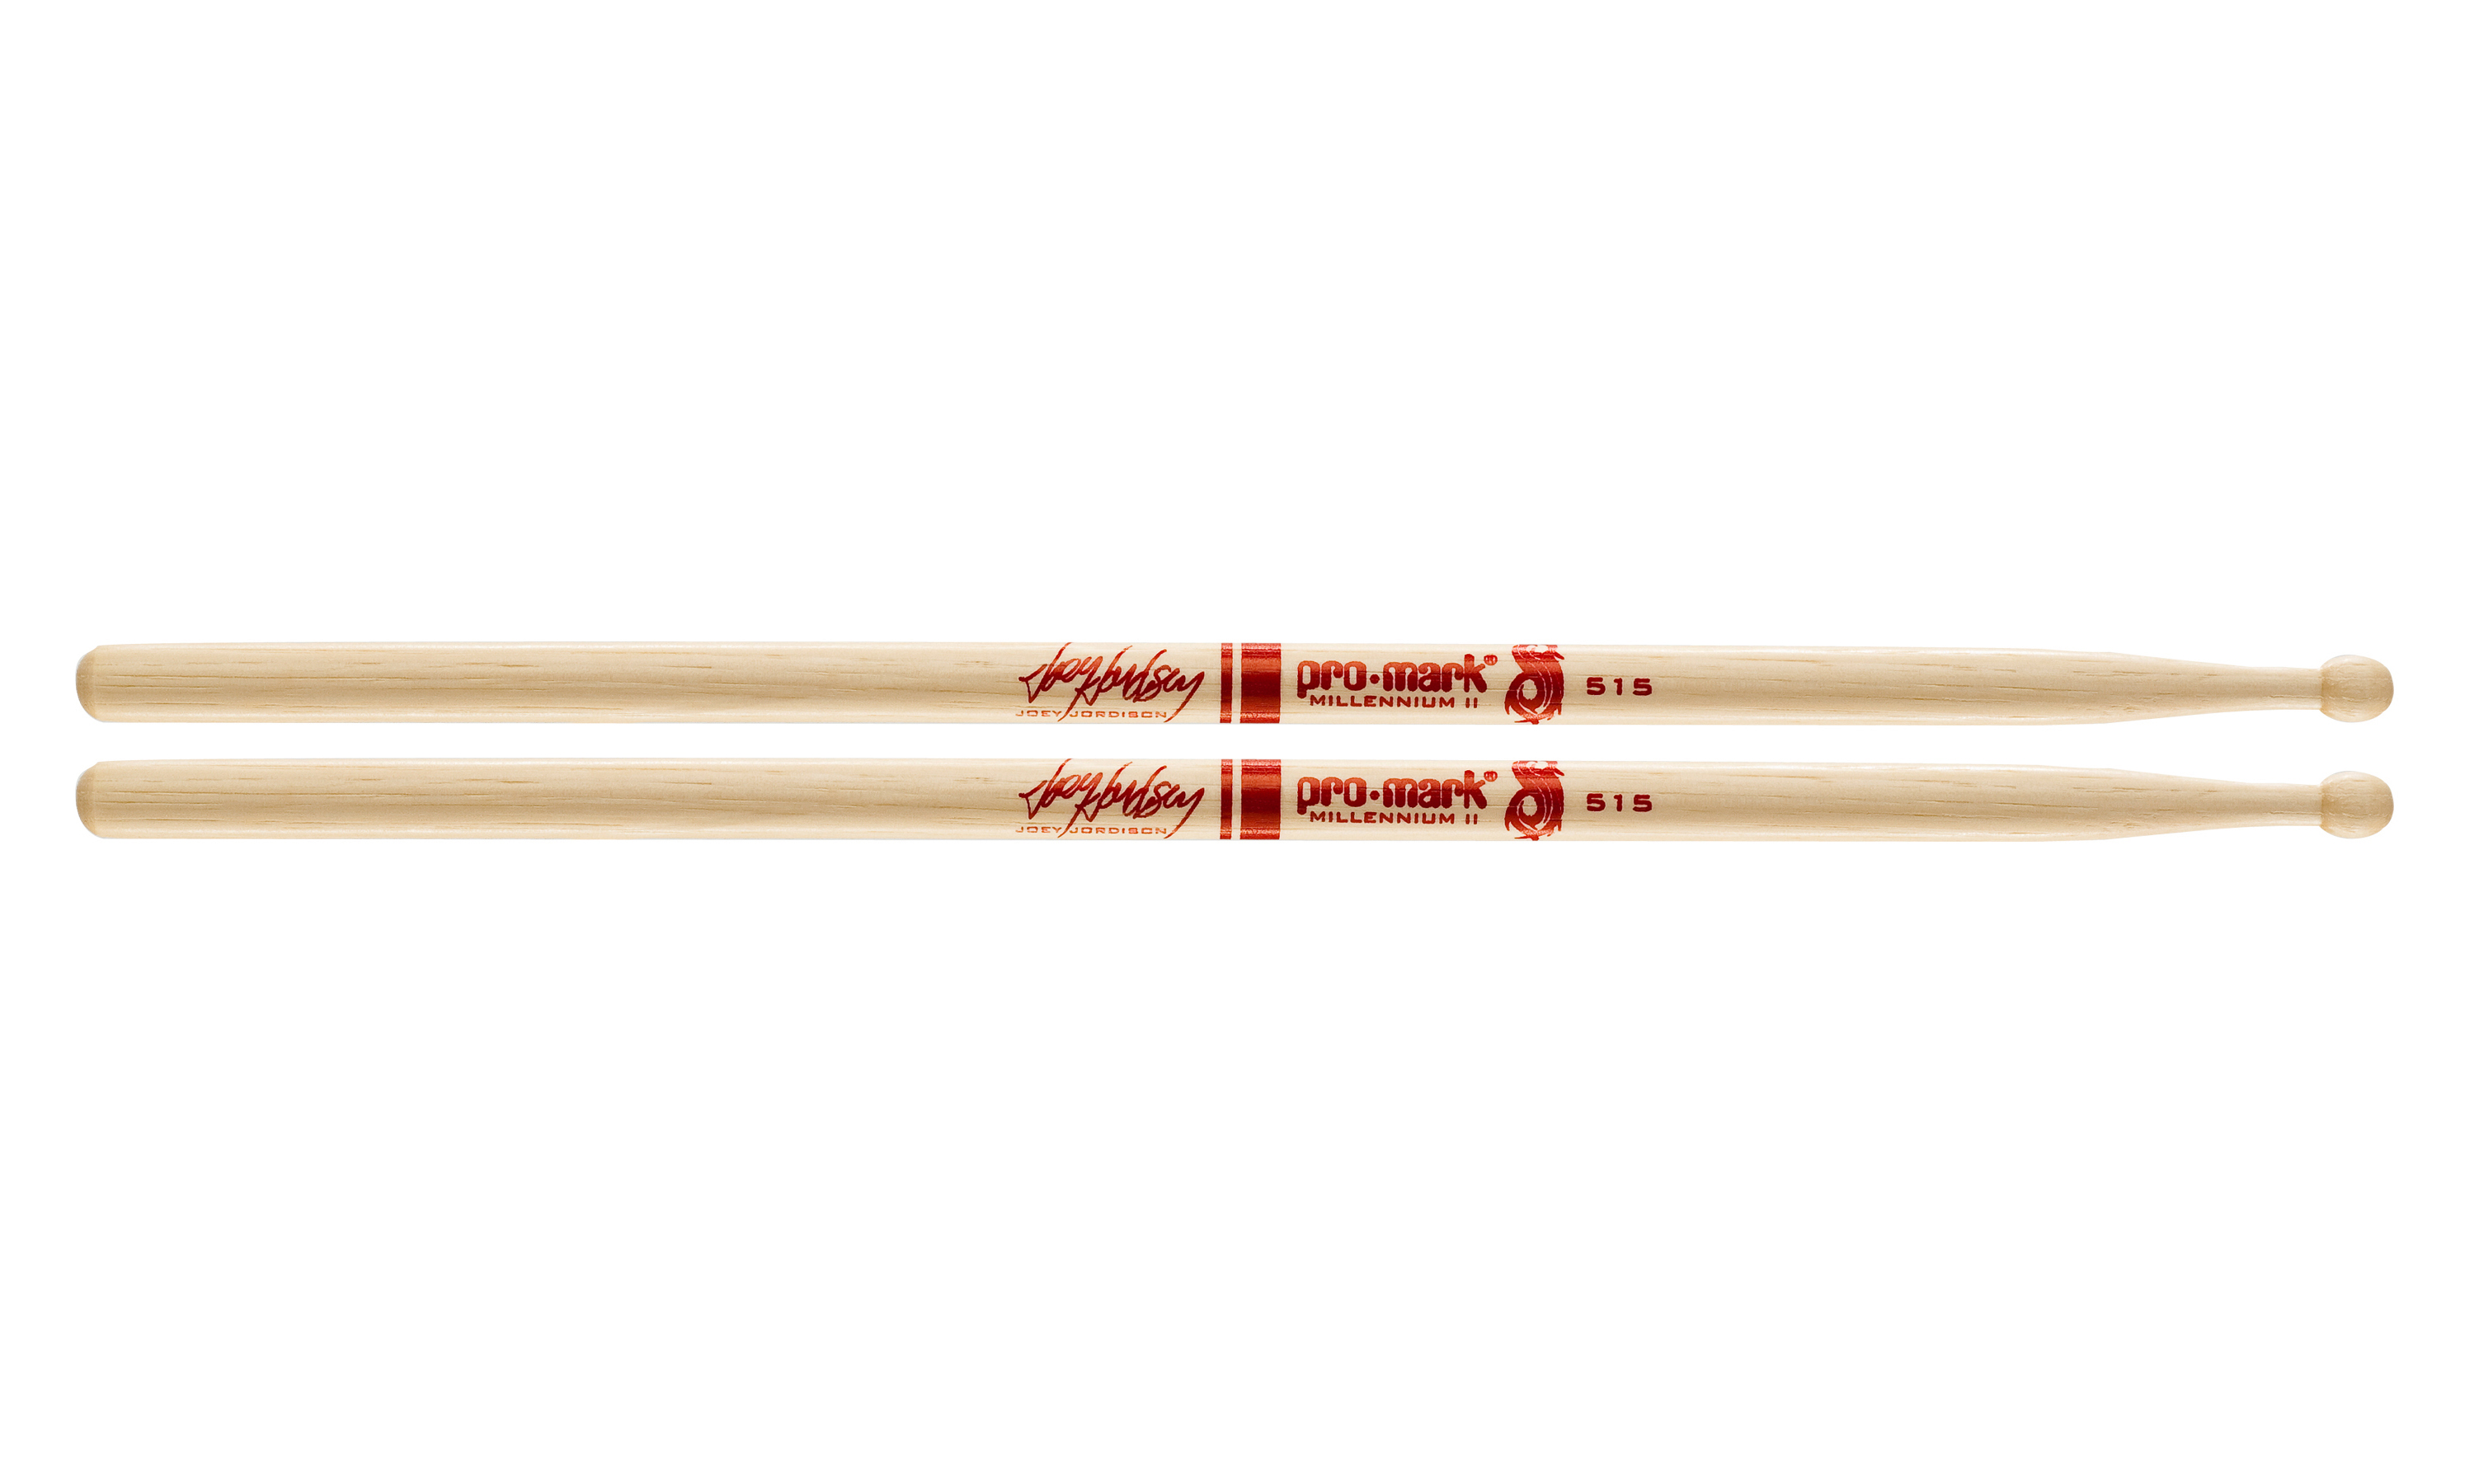 Joey Jordison Hickory 515 Woodtip Drumsticks